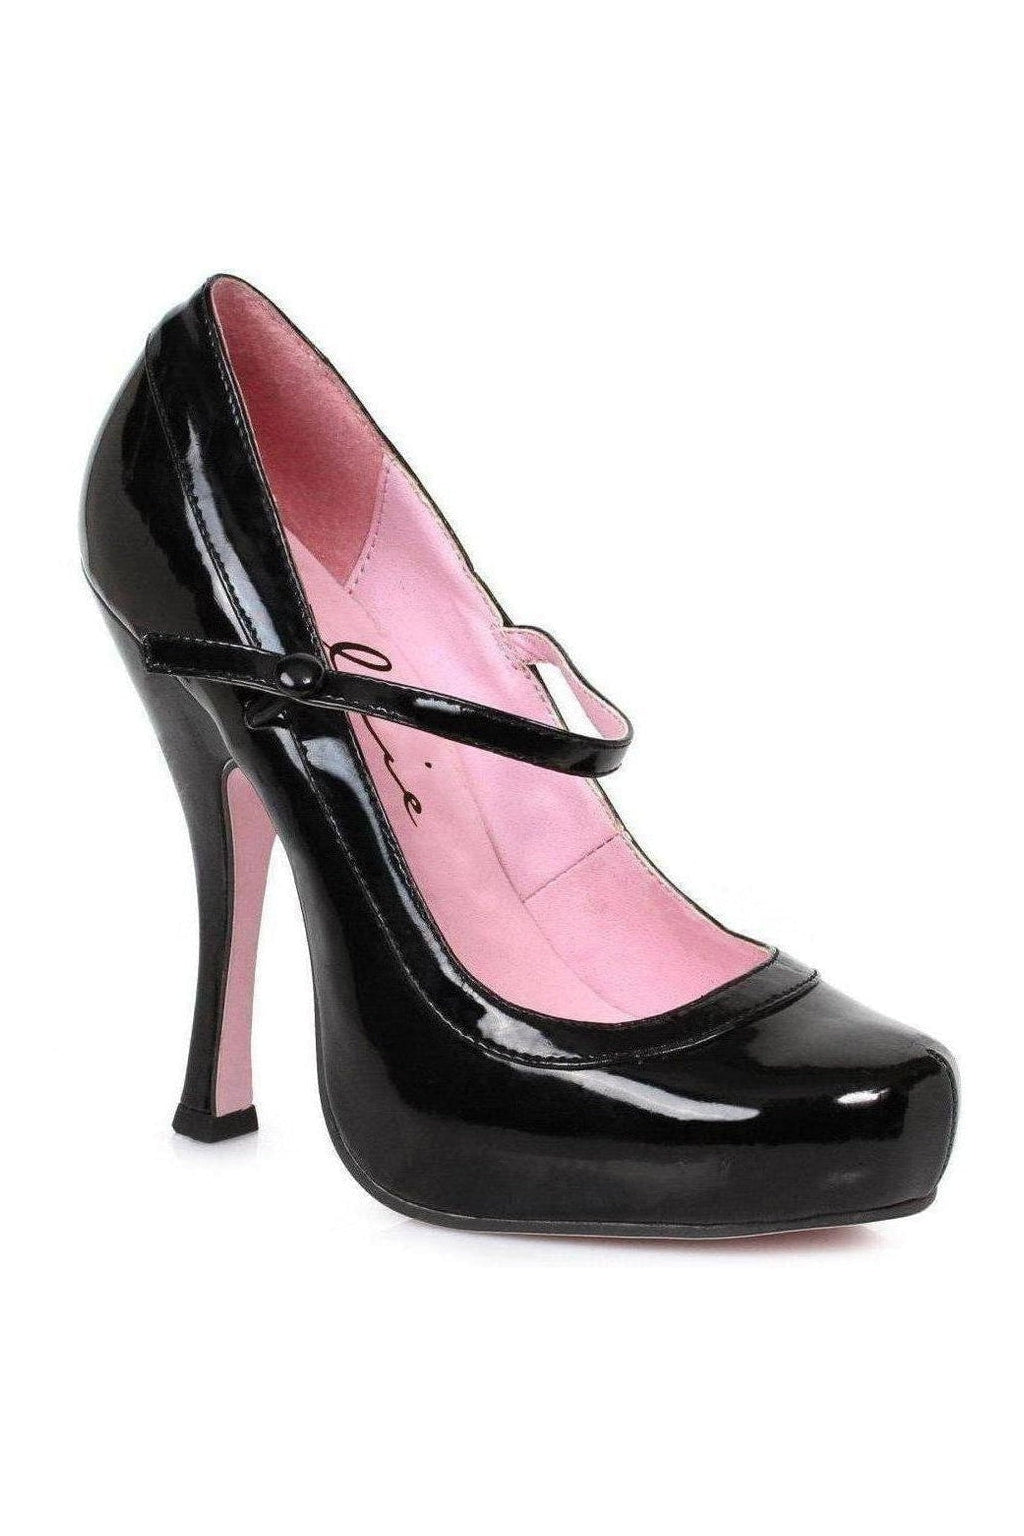 423-BABYDOLL Costume Pump | Black Patent-Ellie Shoes-SEXYSHOES.COM